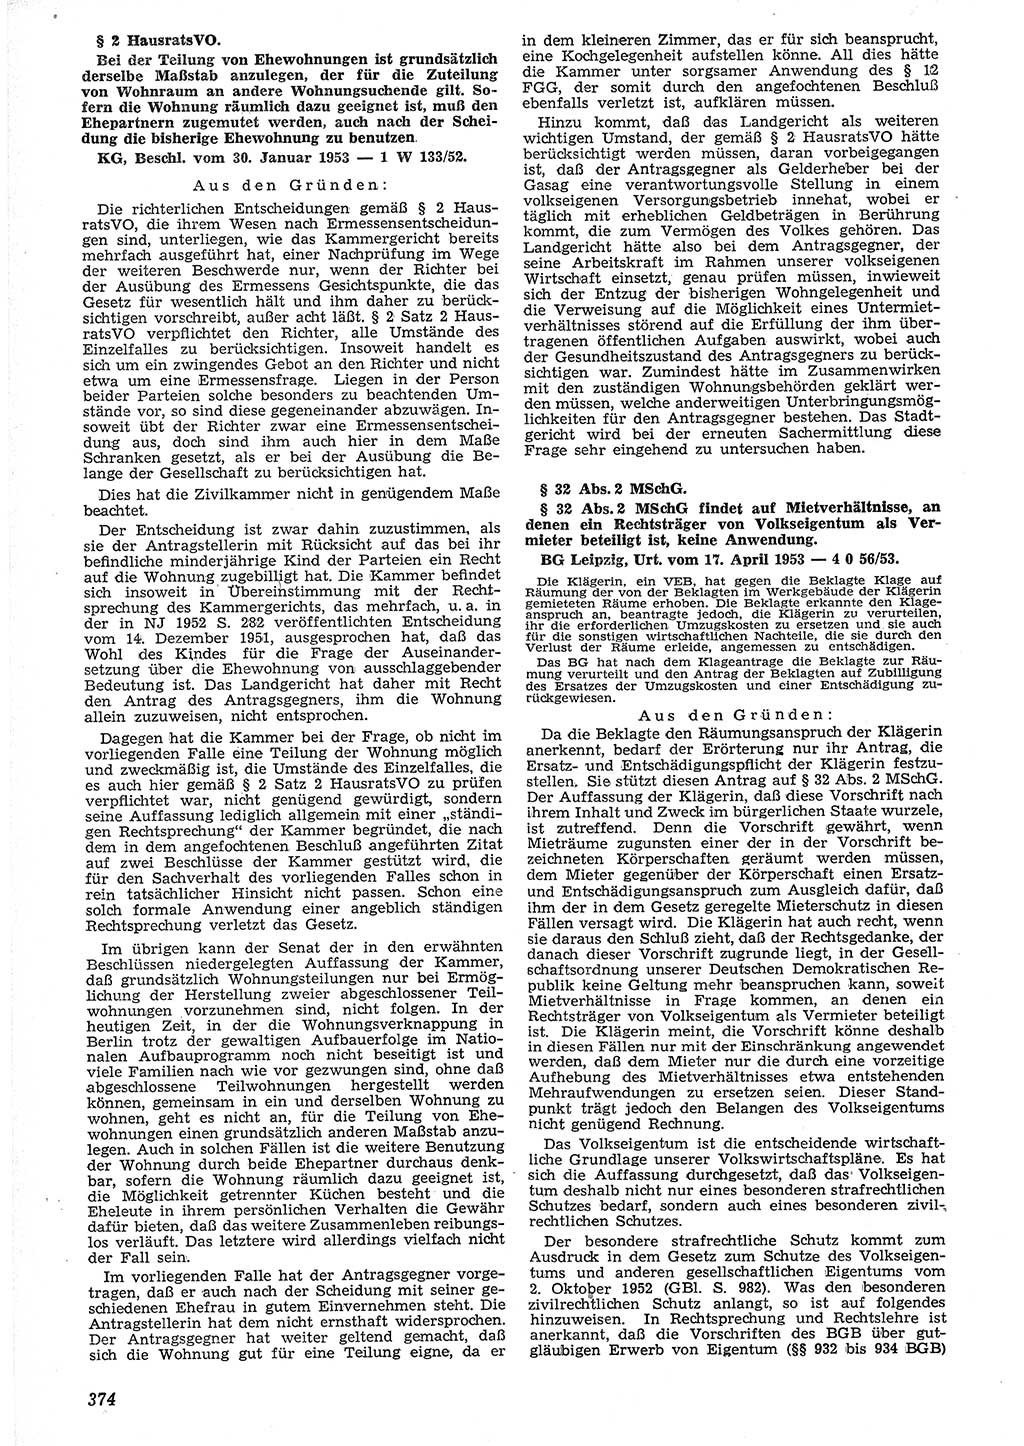 Neue Justiz (NJ), Zeitschrift für Recht und Rechtswissenschaft [Deutsche Demokratische Republik (DDR)], 7. Jahrgang 1953, Seite 374 (NJ DDR 1953, S. 374)